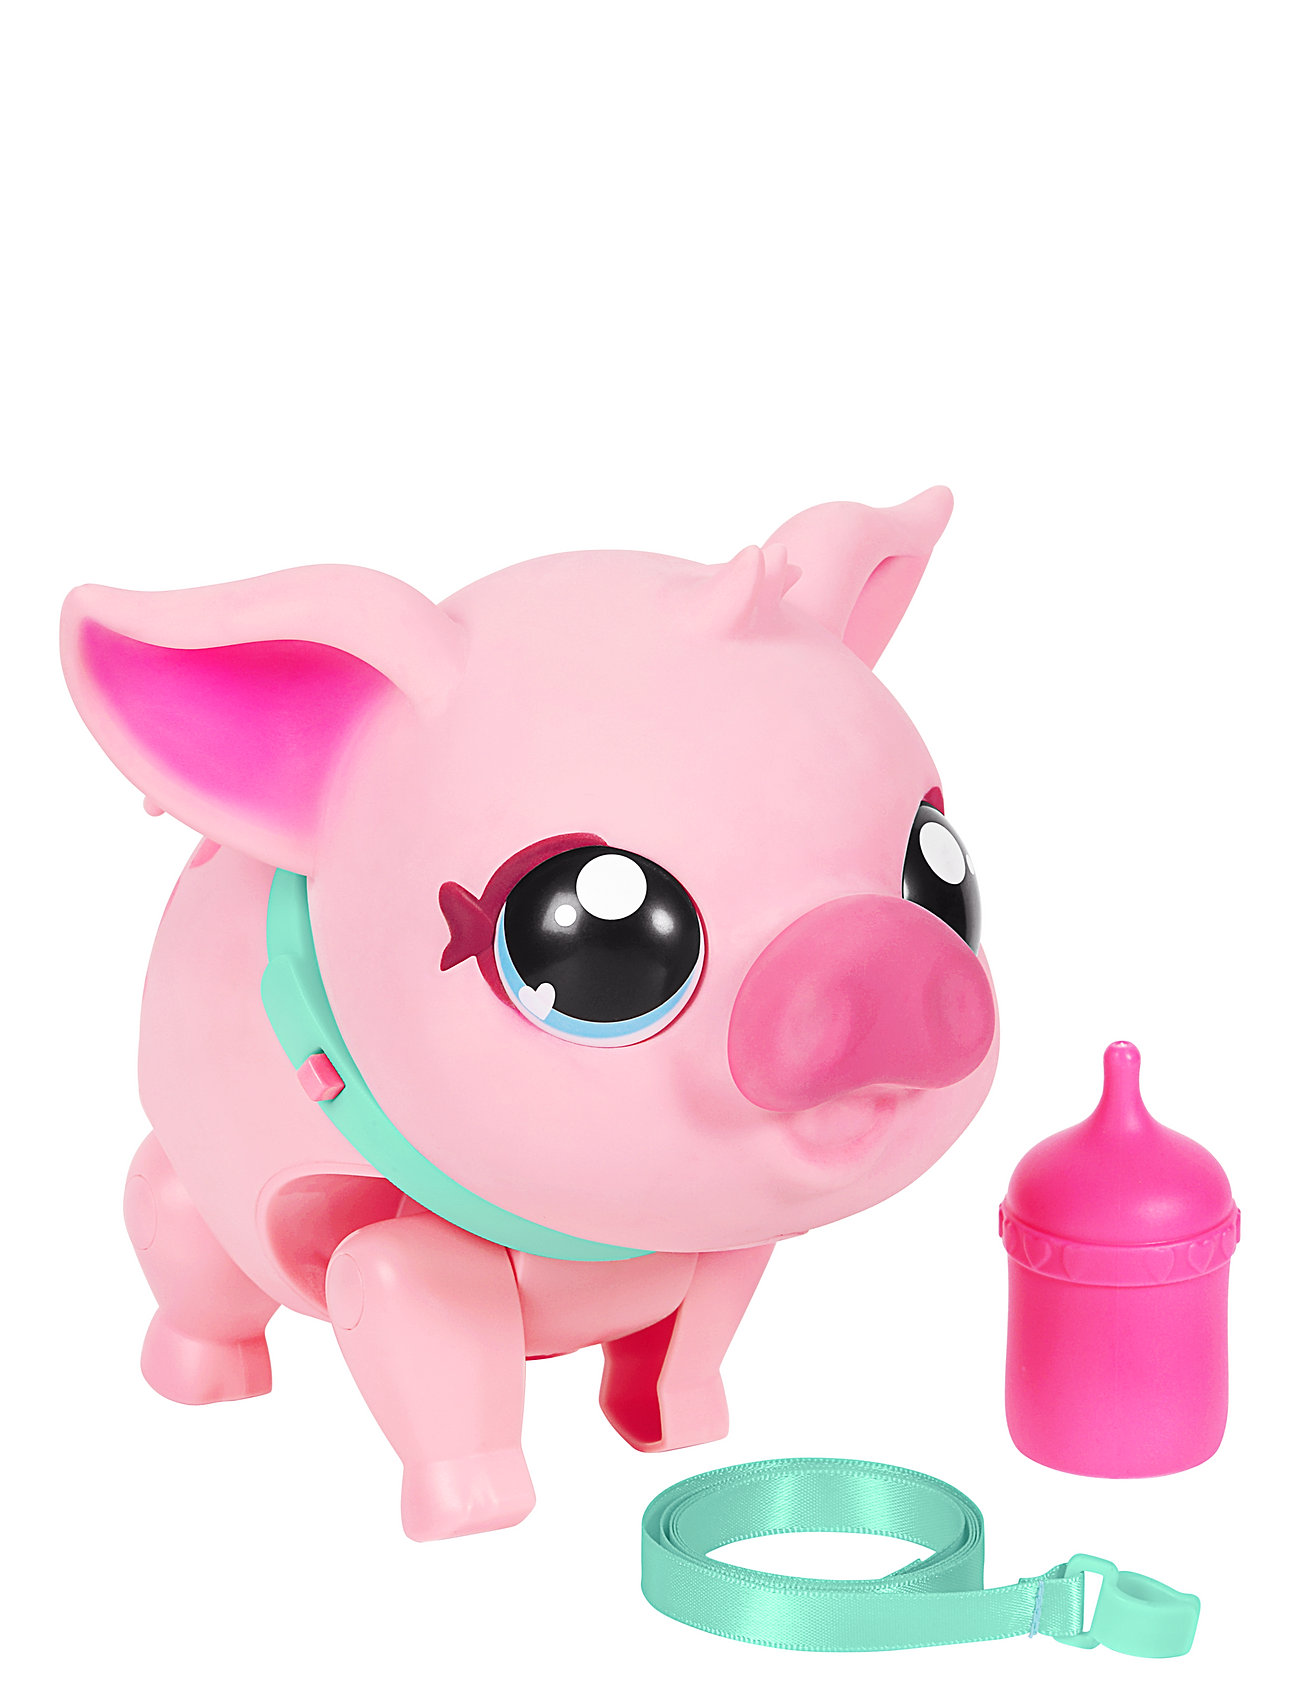 Little Live Pets Piggles S1 Toys Interactive Animals & Robots Interactive Animals Pink Little Live Pets